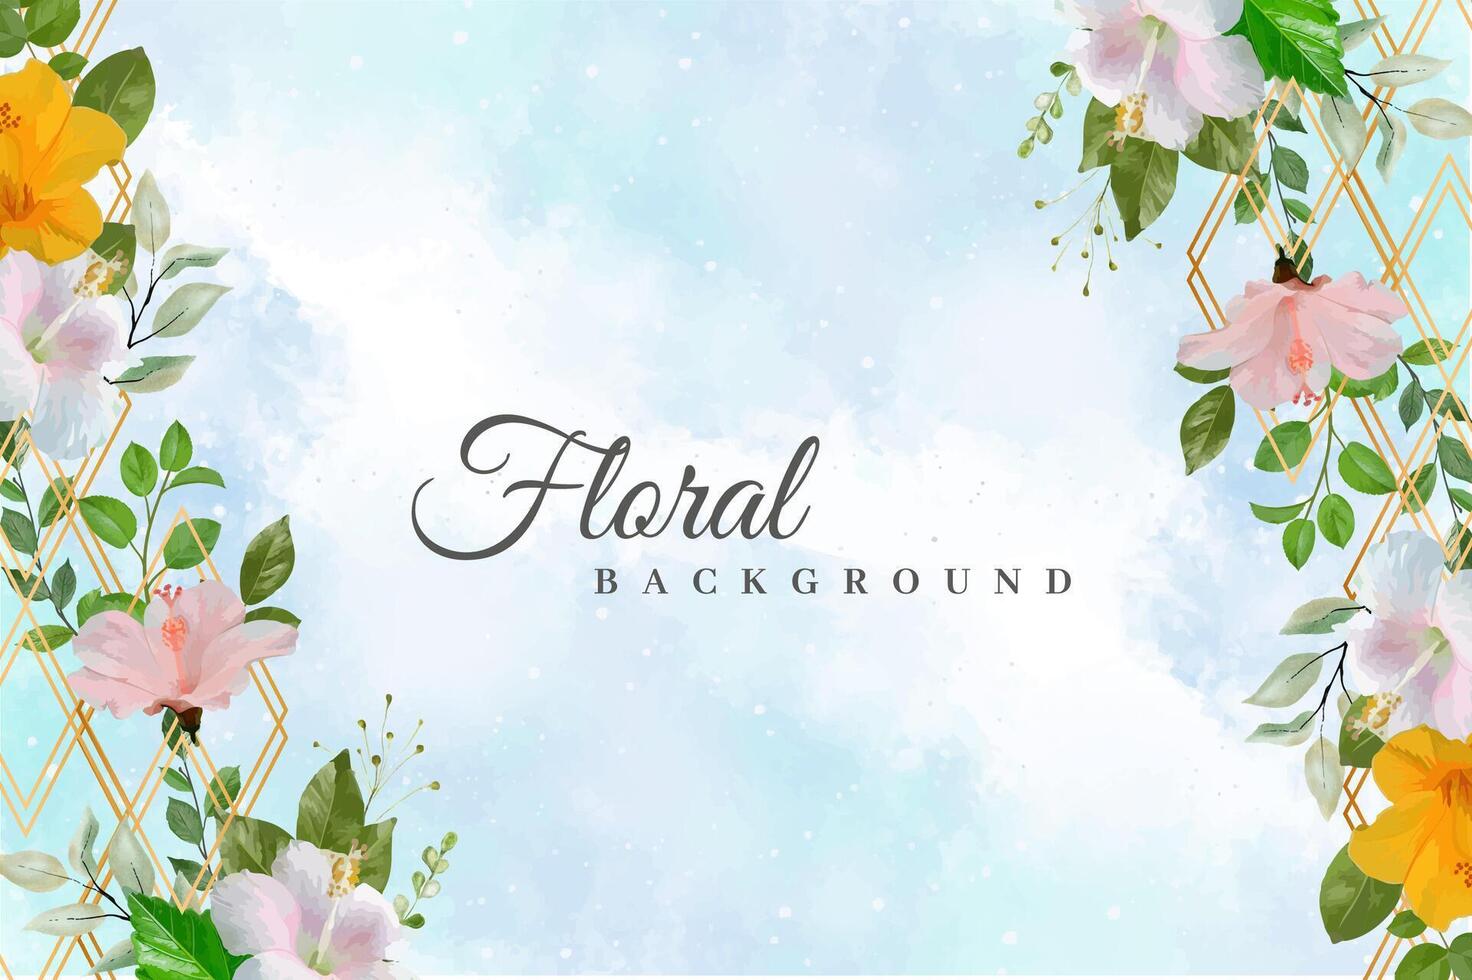 lindo modelo de cartão de convite de casamento floral vetor